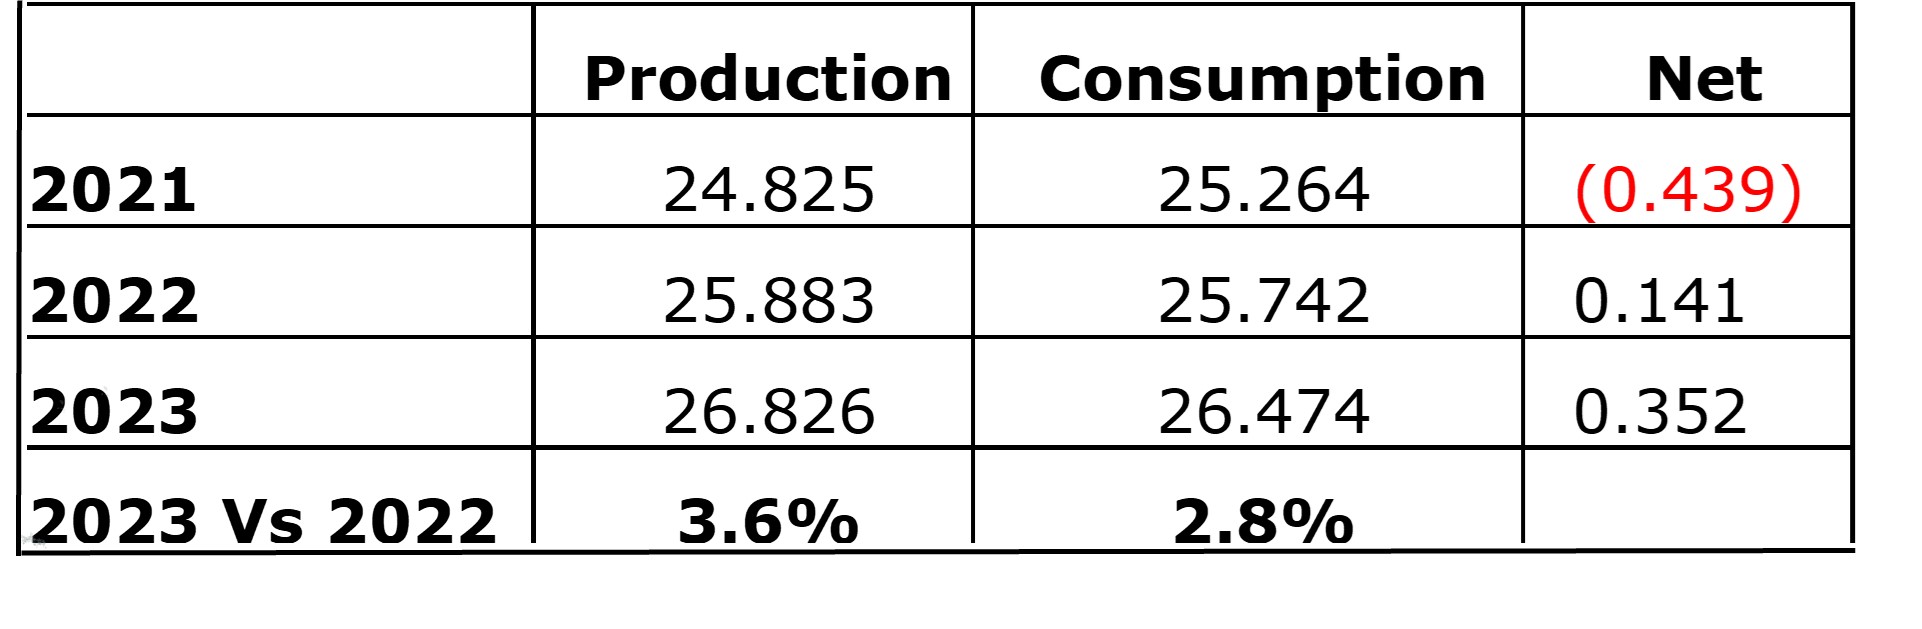 Copper-Production-vs-Consumption-April-2022.jpg